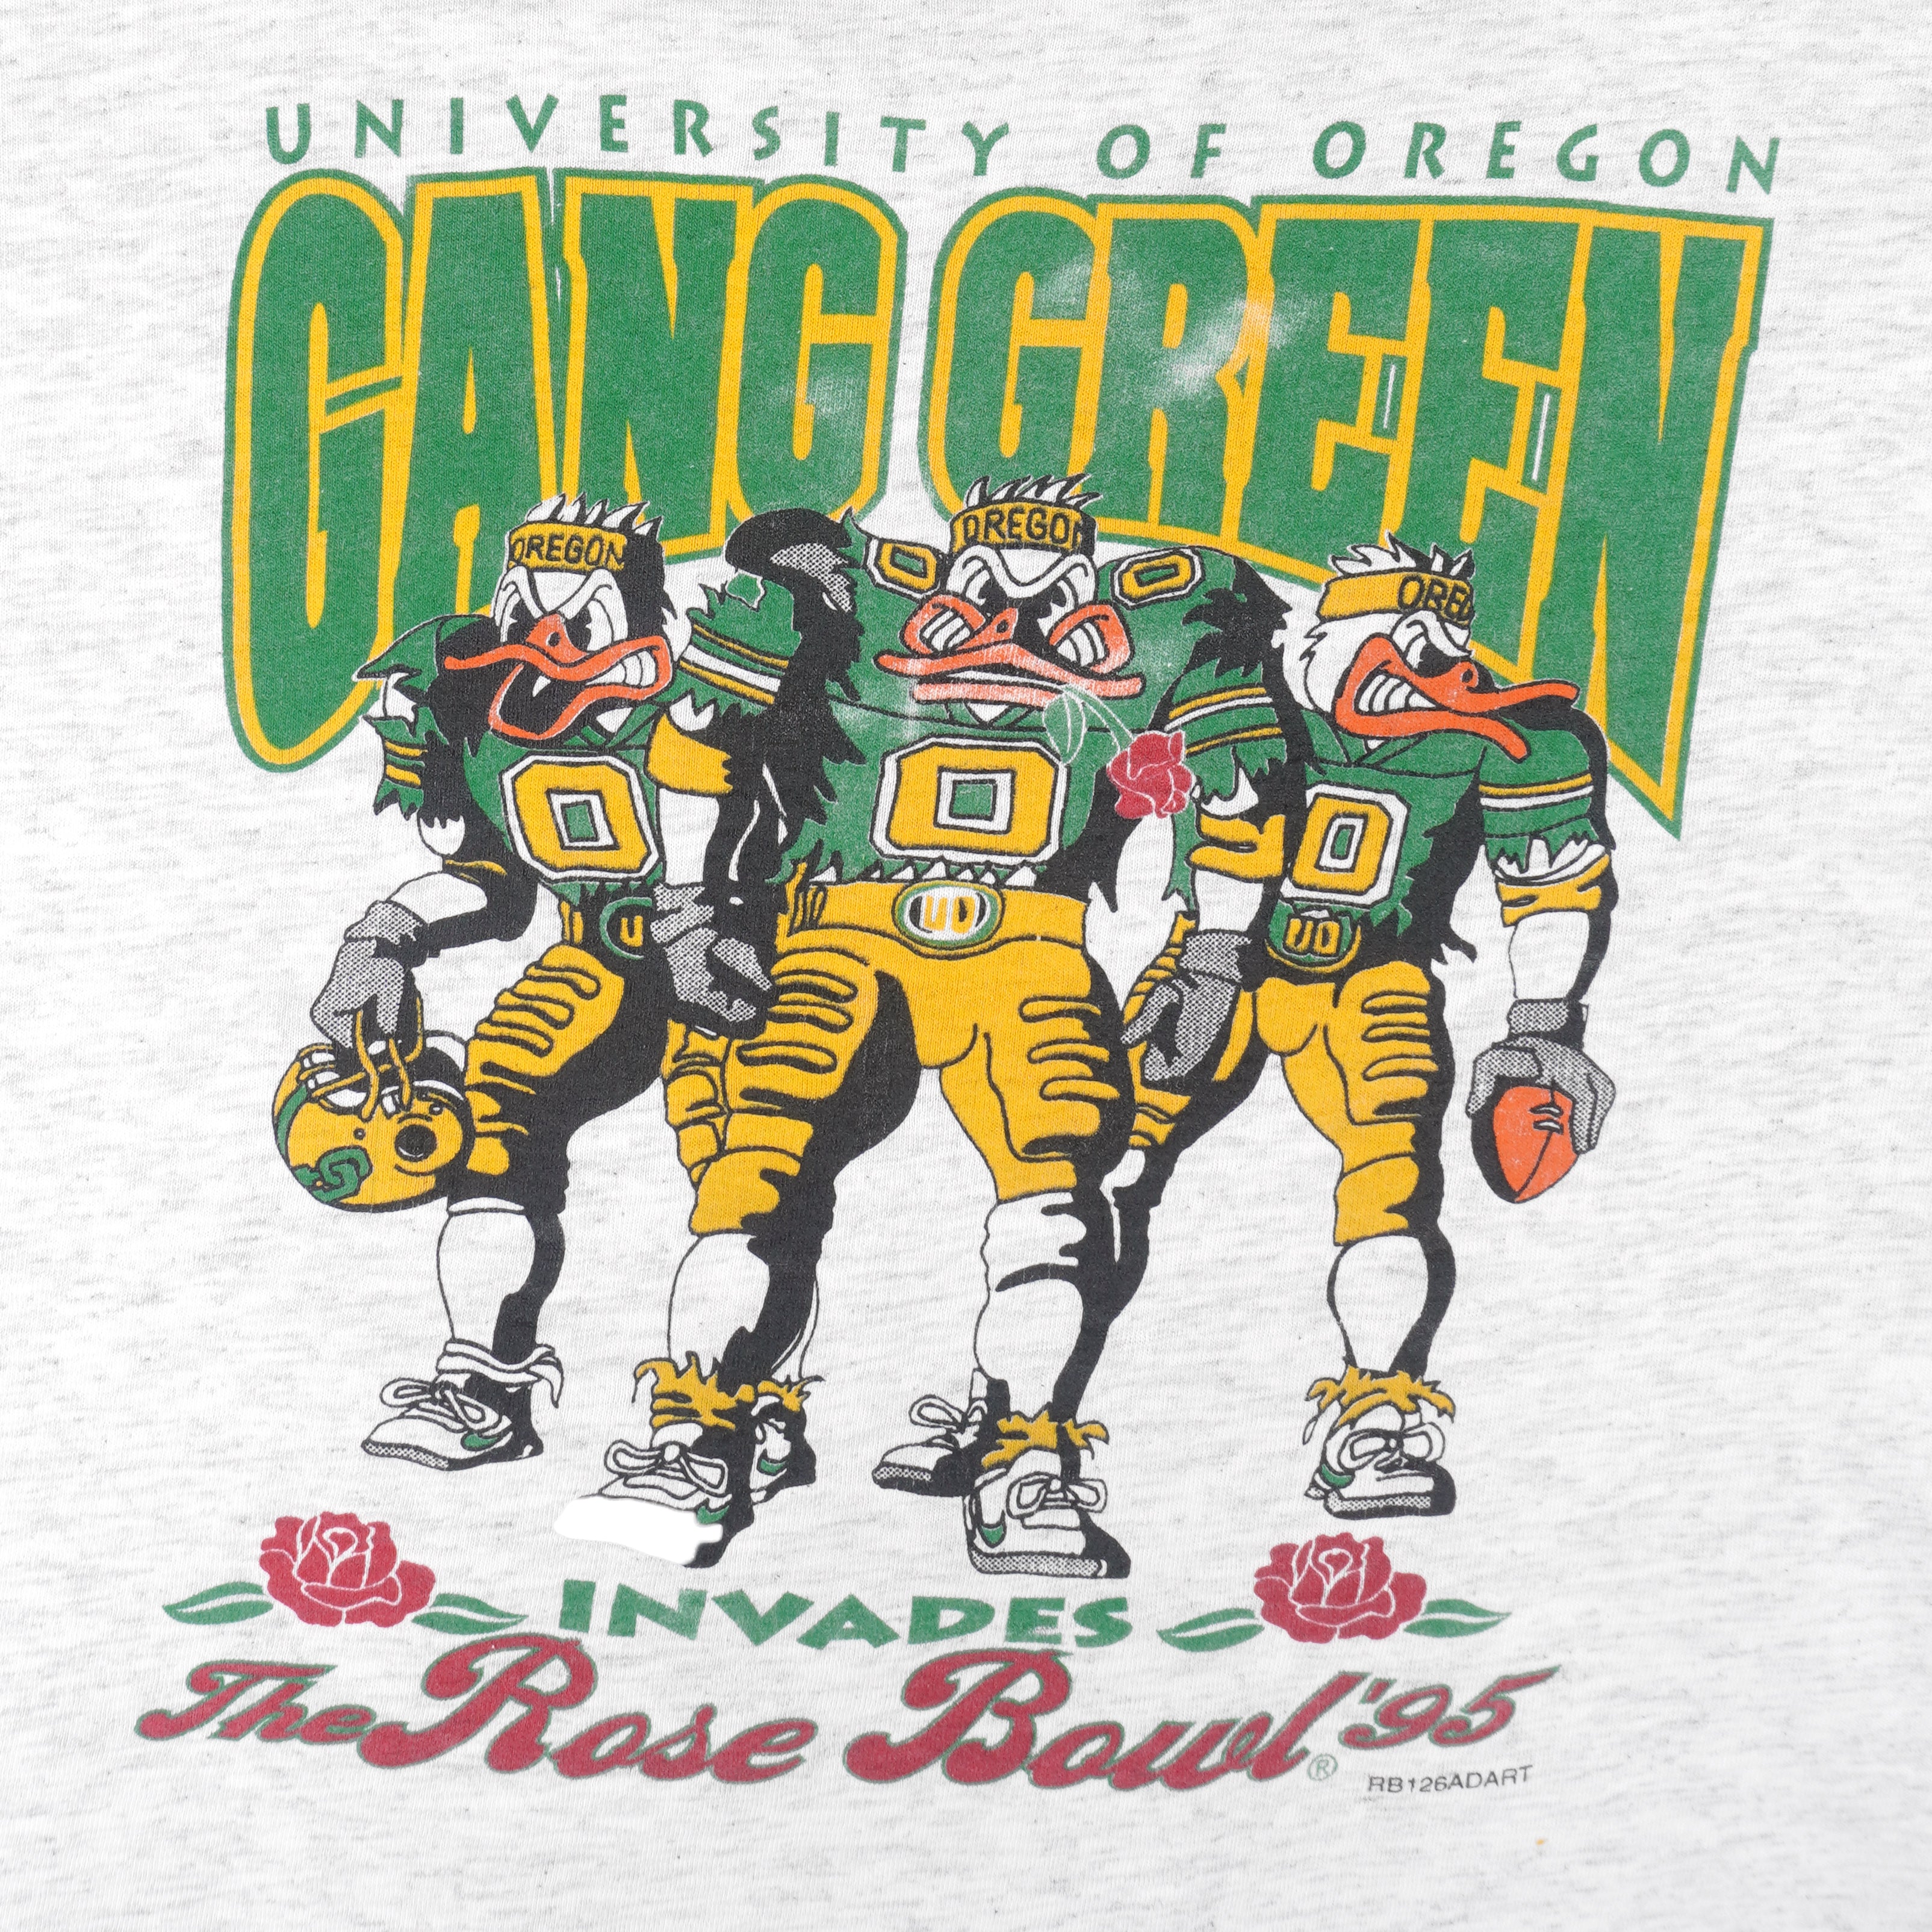 Vintage Oregon Ducks T Shirt-1996 Cotton Bowl 